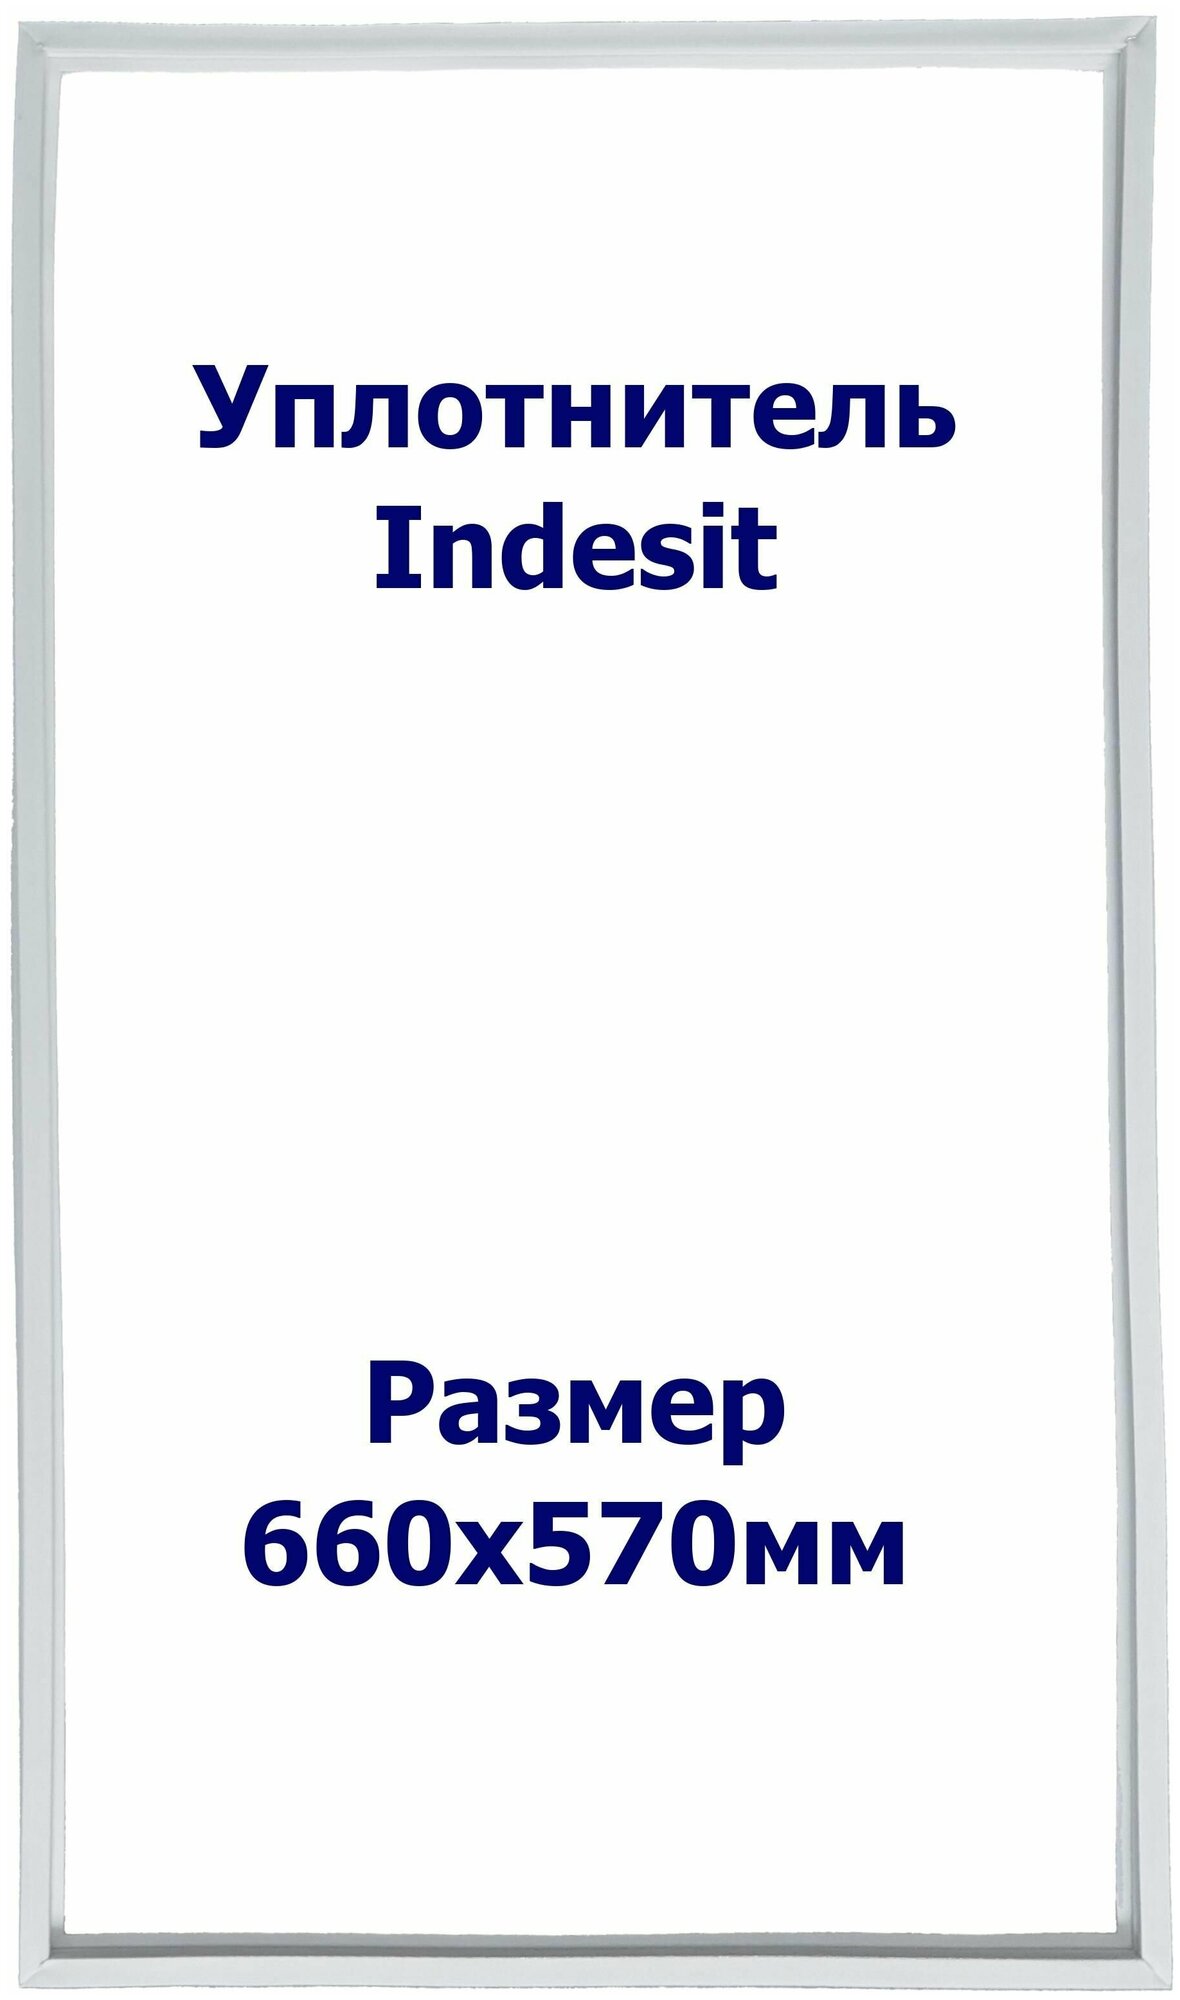 Уплотнитель Indesit DF 4180 W. (Морозильная камера), Размер - 660x570 мм. ОМ - фотография № 1